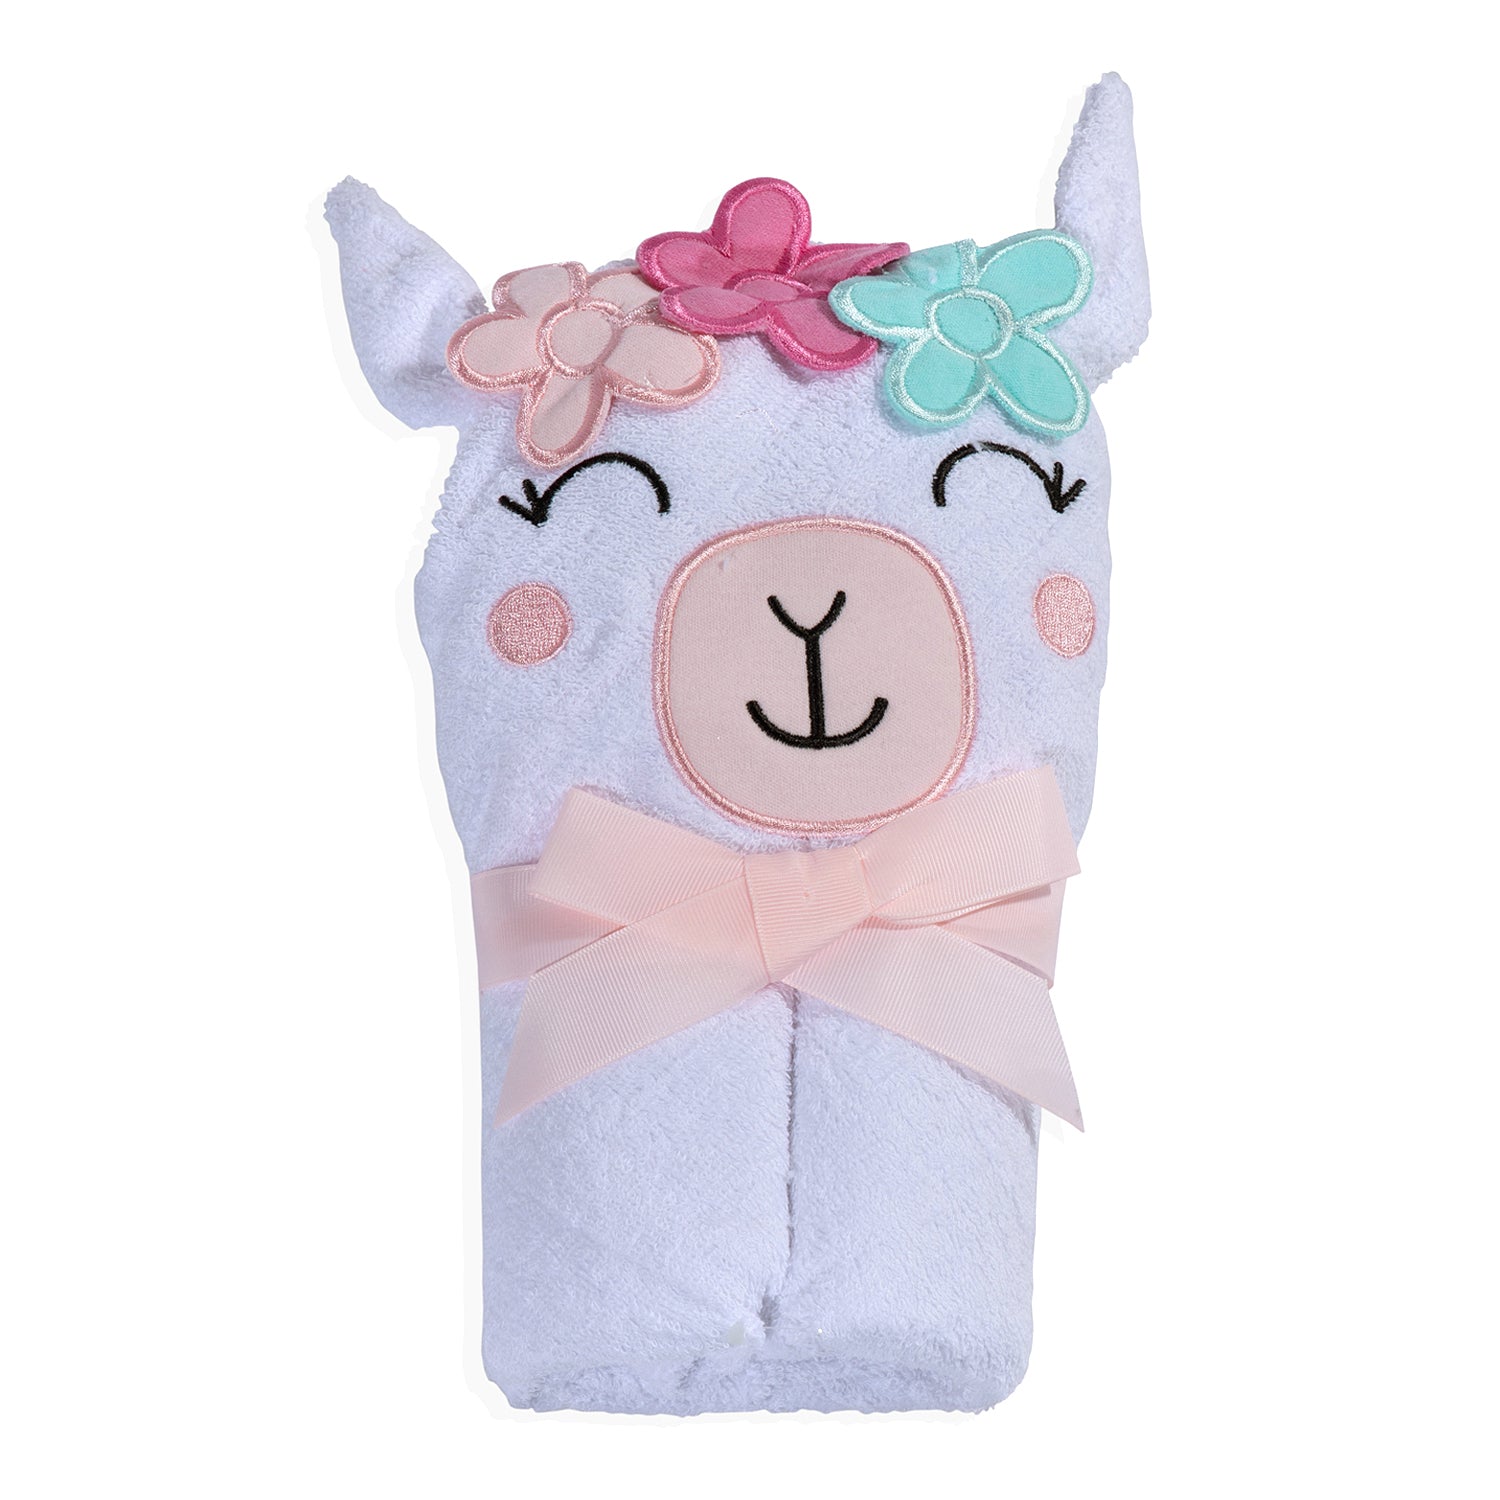 Baby Moo Garland Princess Llama Premium Hooded Towel - White - Baby Moo